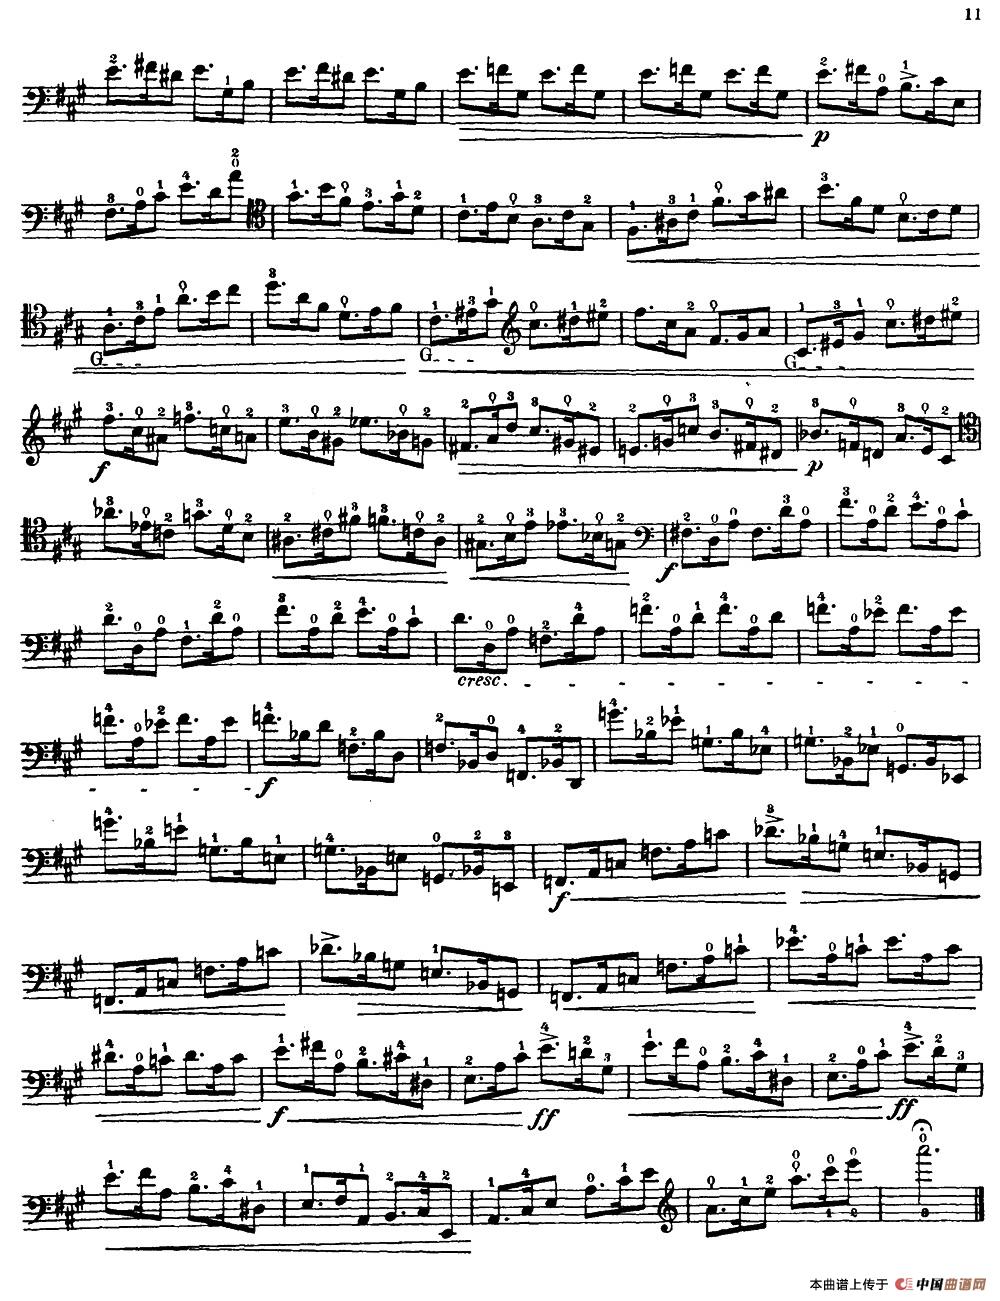 大提琴高级练习曲40首 No.5小提琴谱